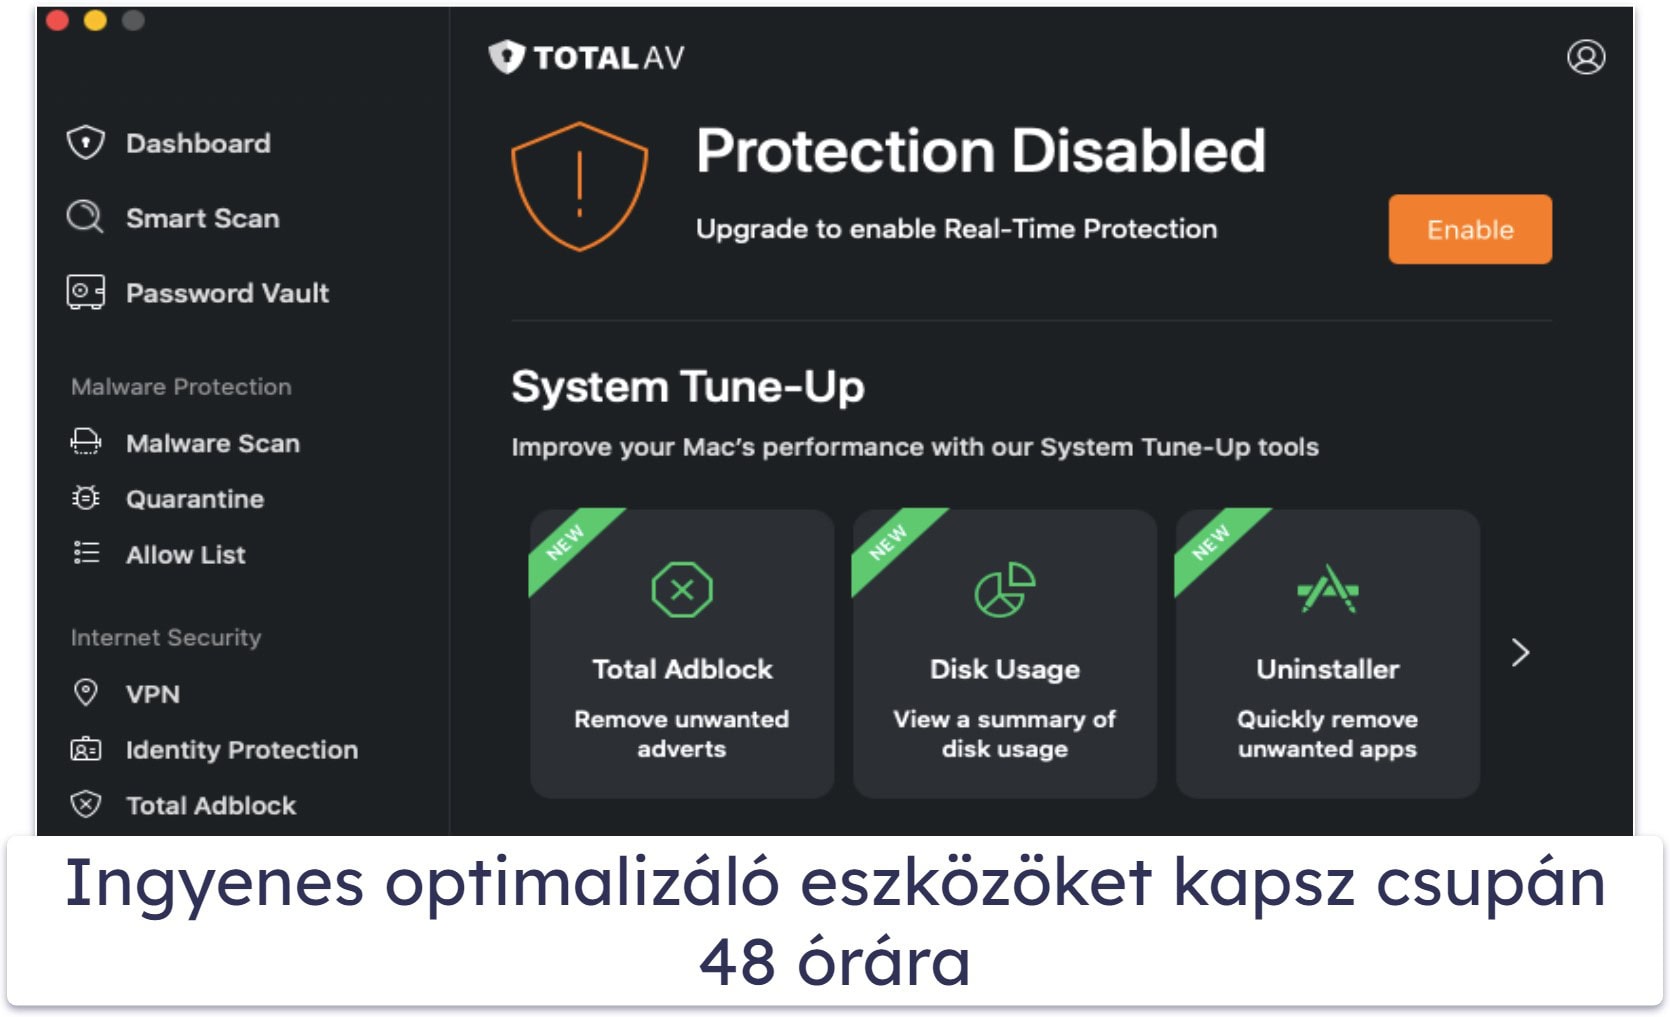 2.🥈 TotalAV Free Antivirus — Jó víruskereső és korlátozott Mac gyorsító eszközök